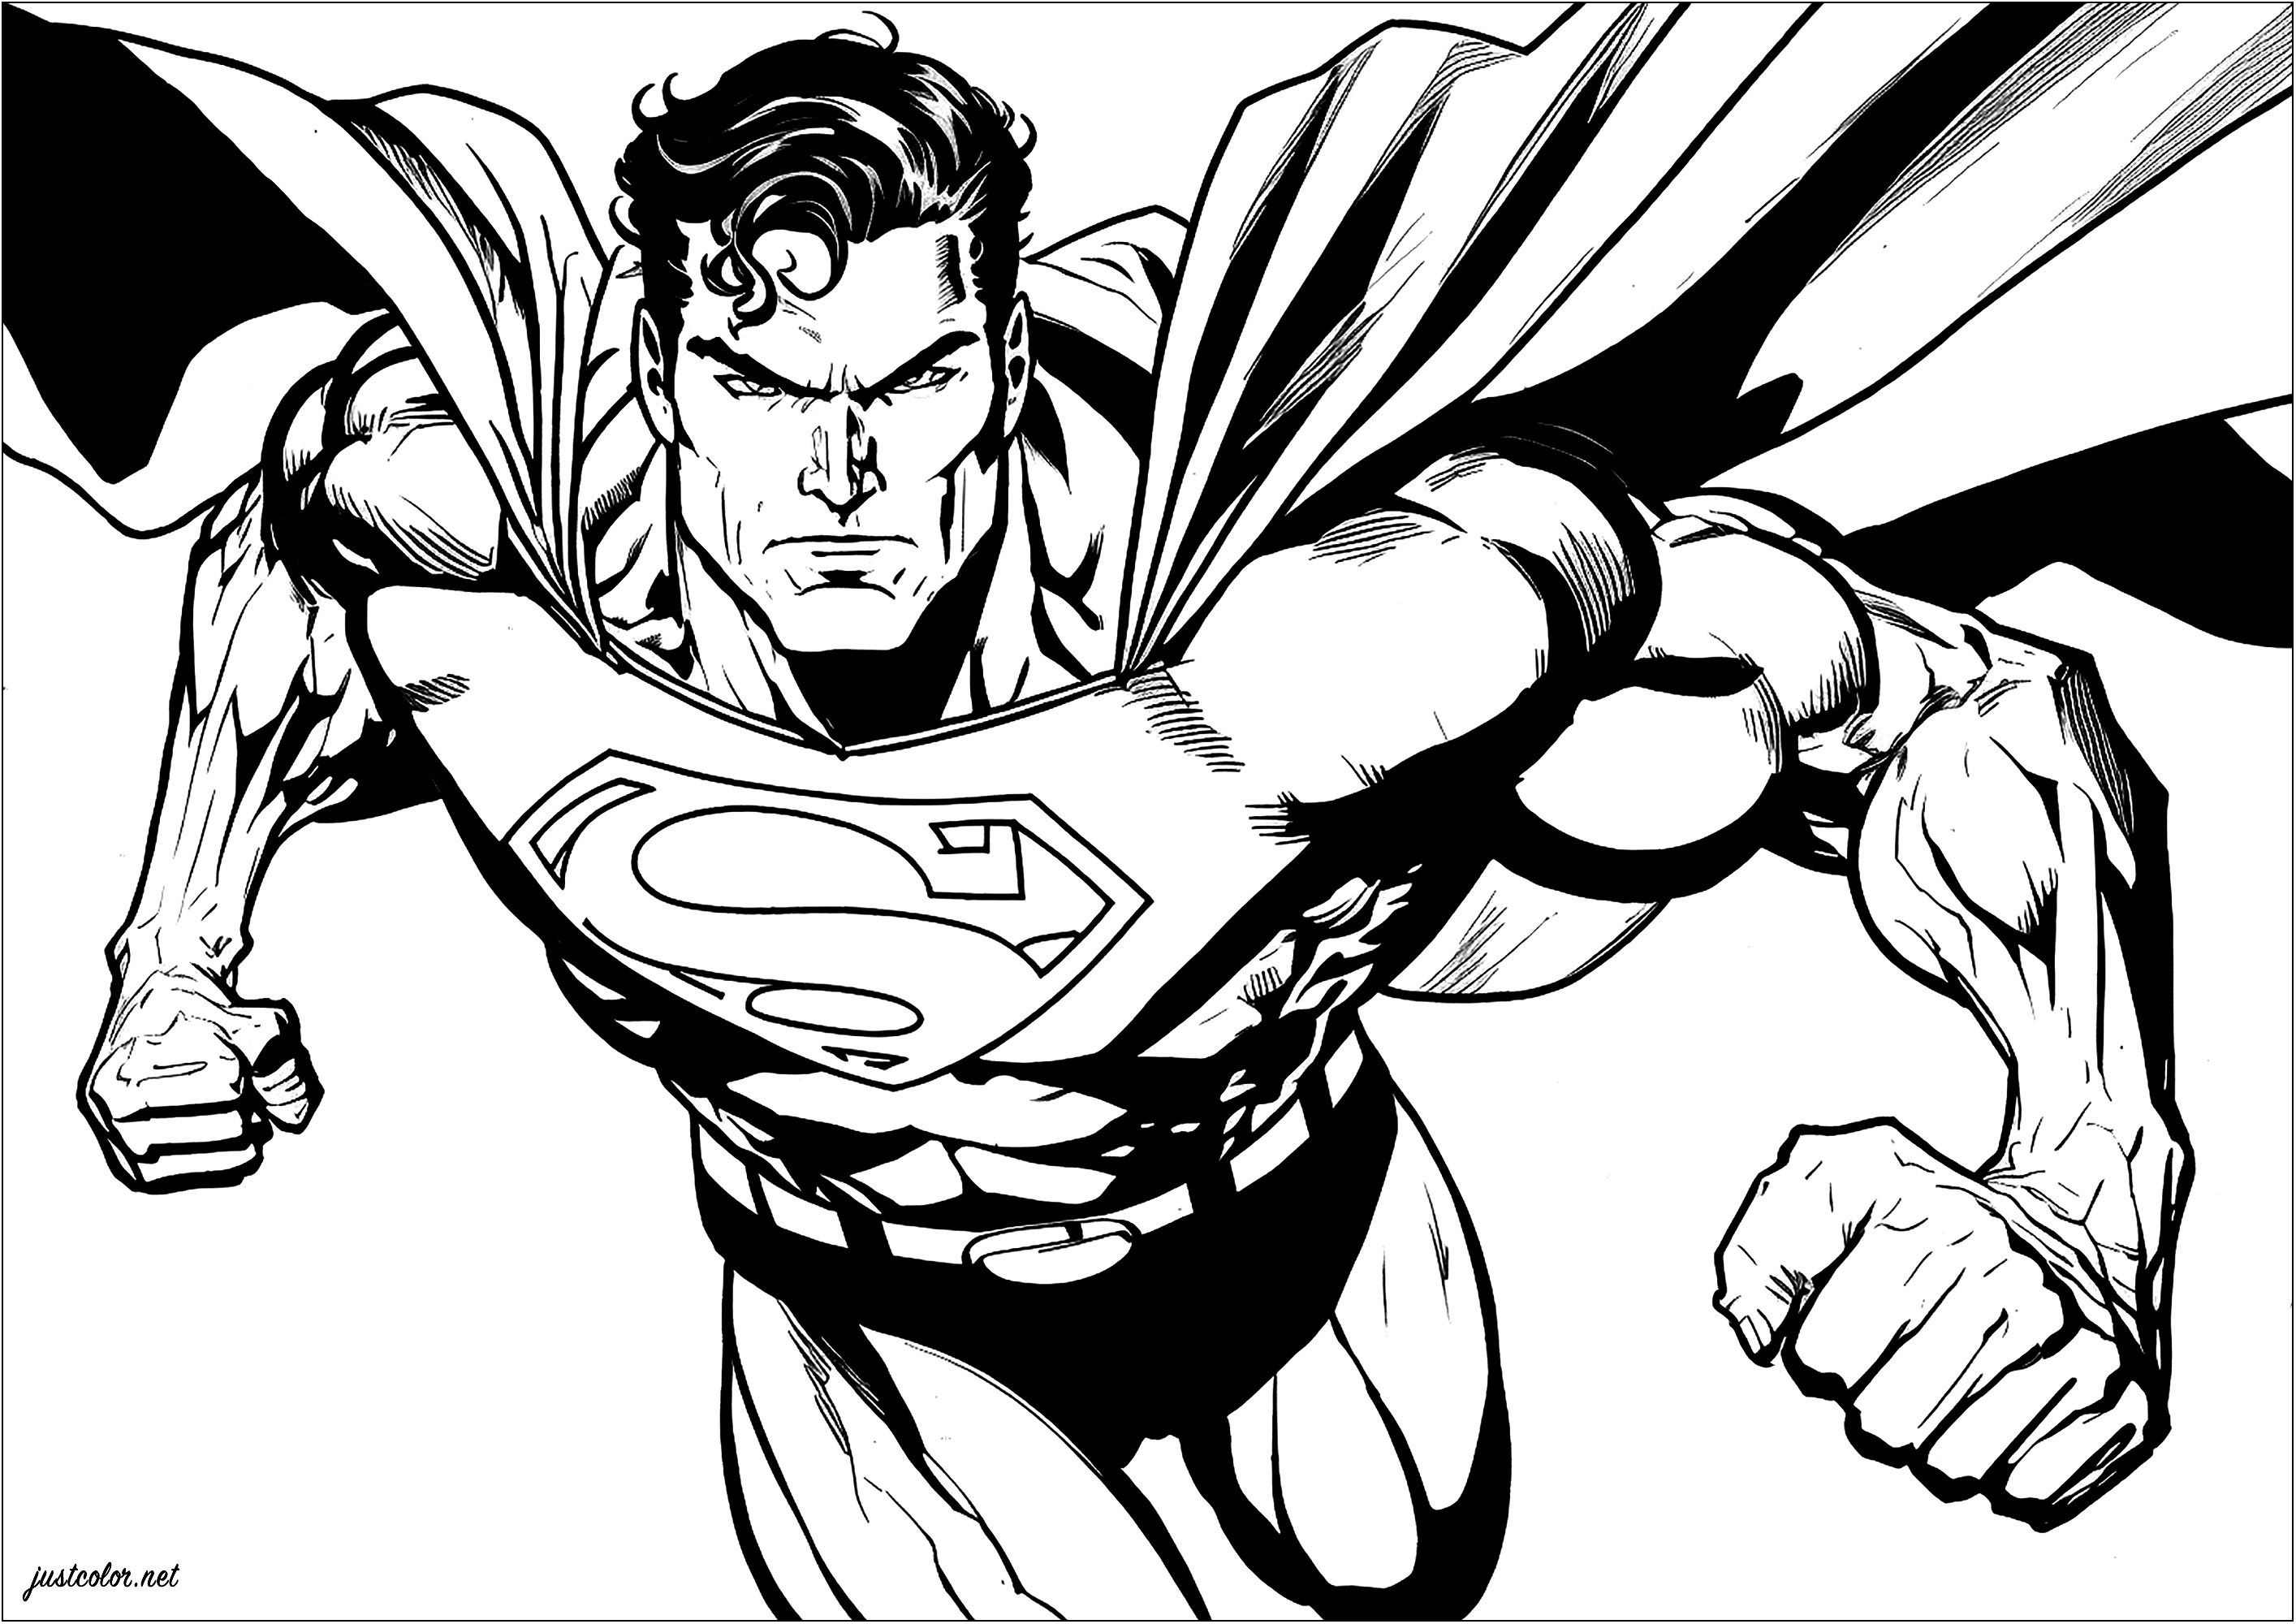 Superman et ses muscles saillants, prêt au combat. Préparez vos feutres bleus, rouges et jaunes !